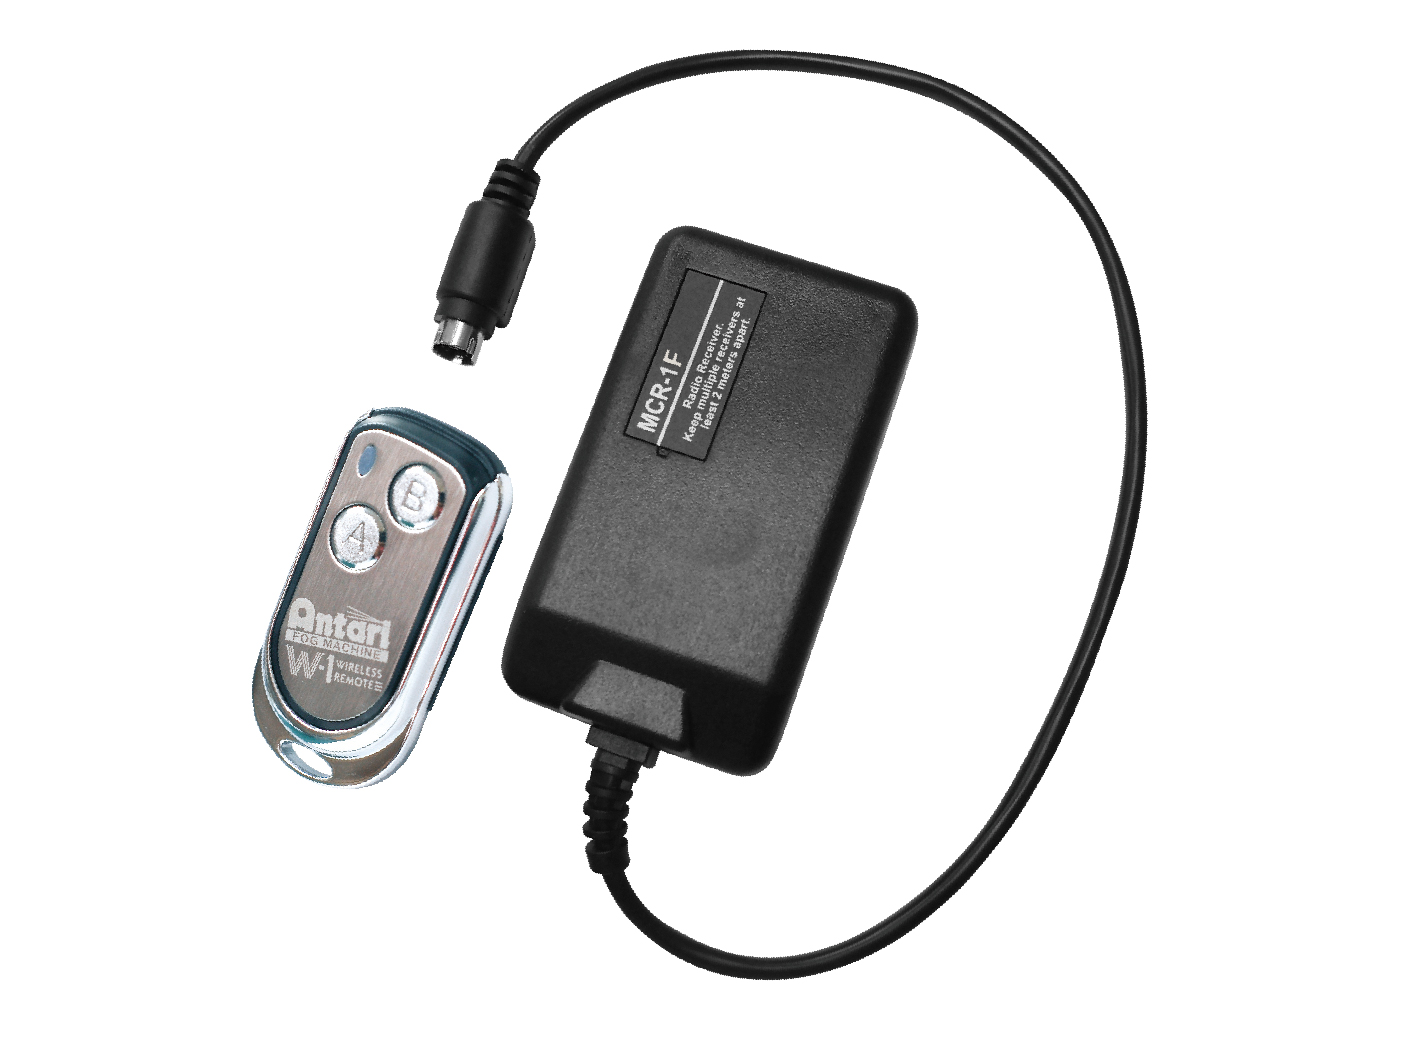 ACCESSORIES_MCR-1F -Wireless Remote